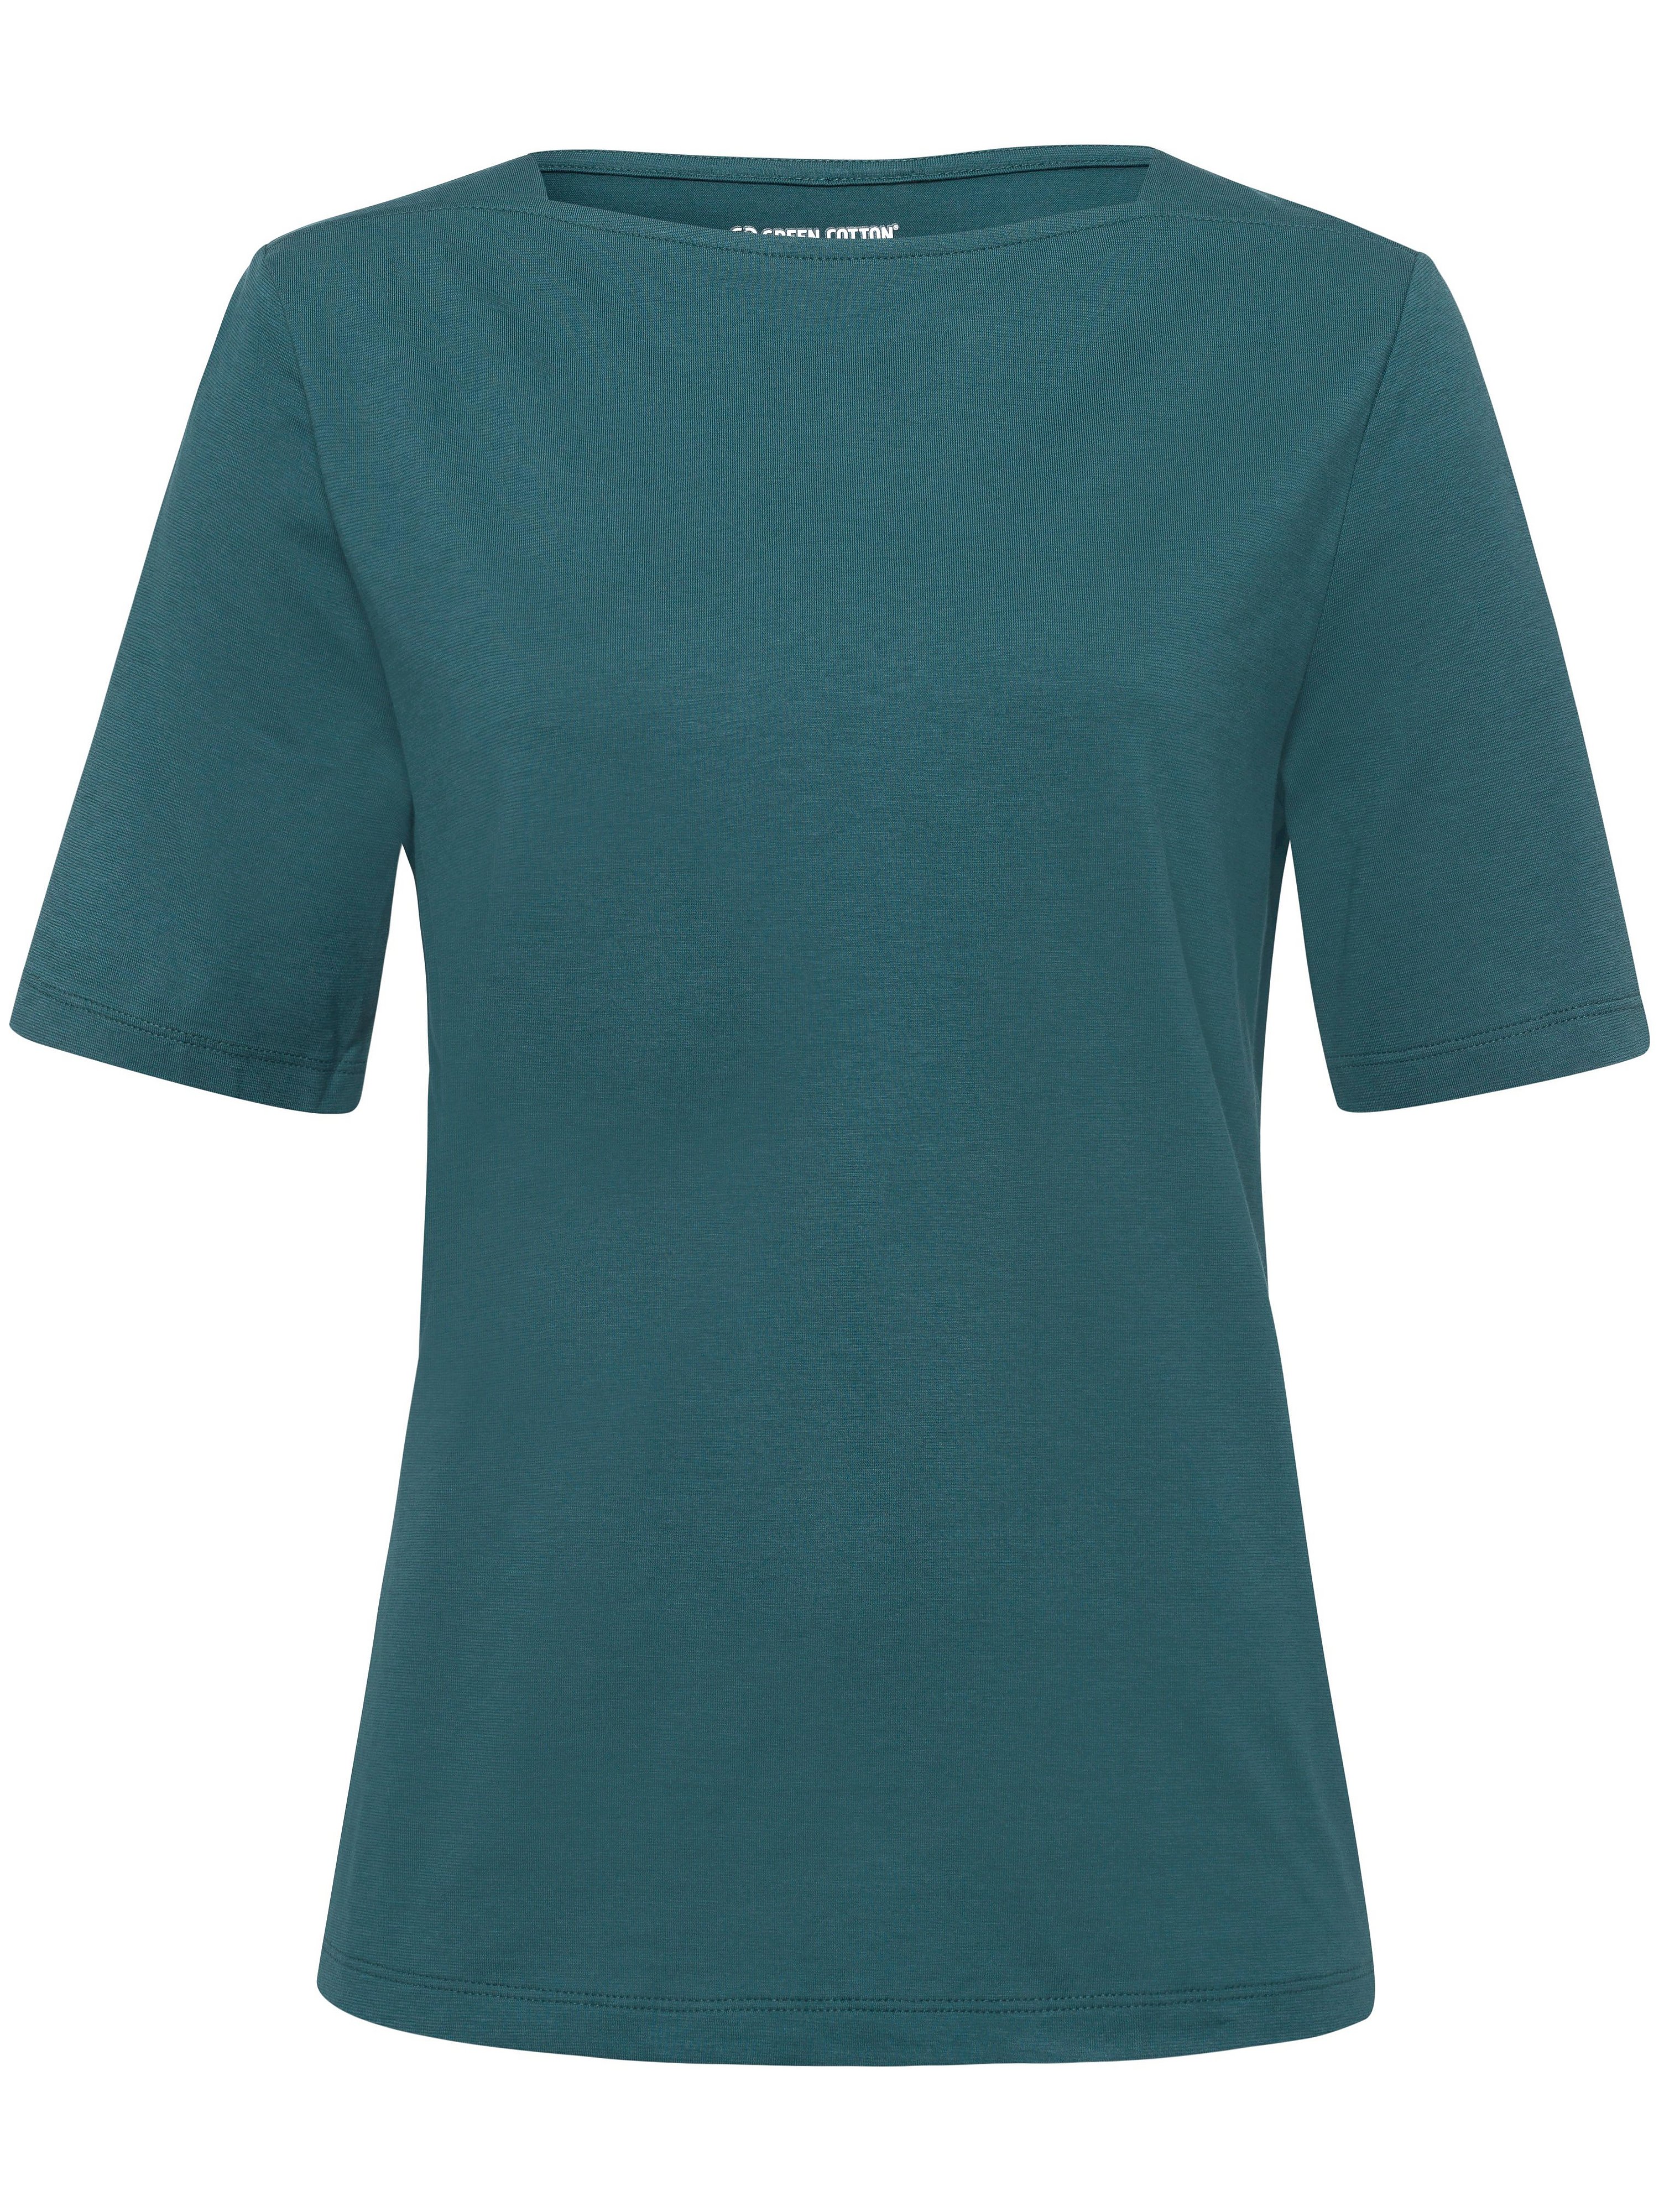 Le T-shirt 100% coton  Green Cotton vert taille 50